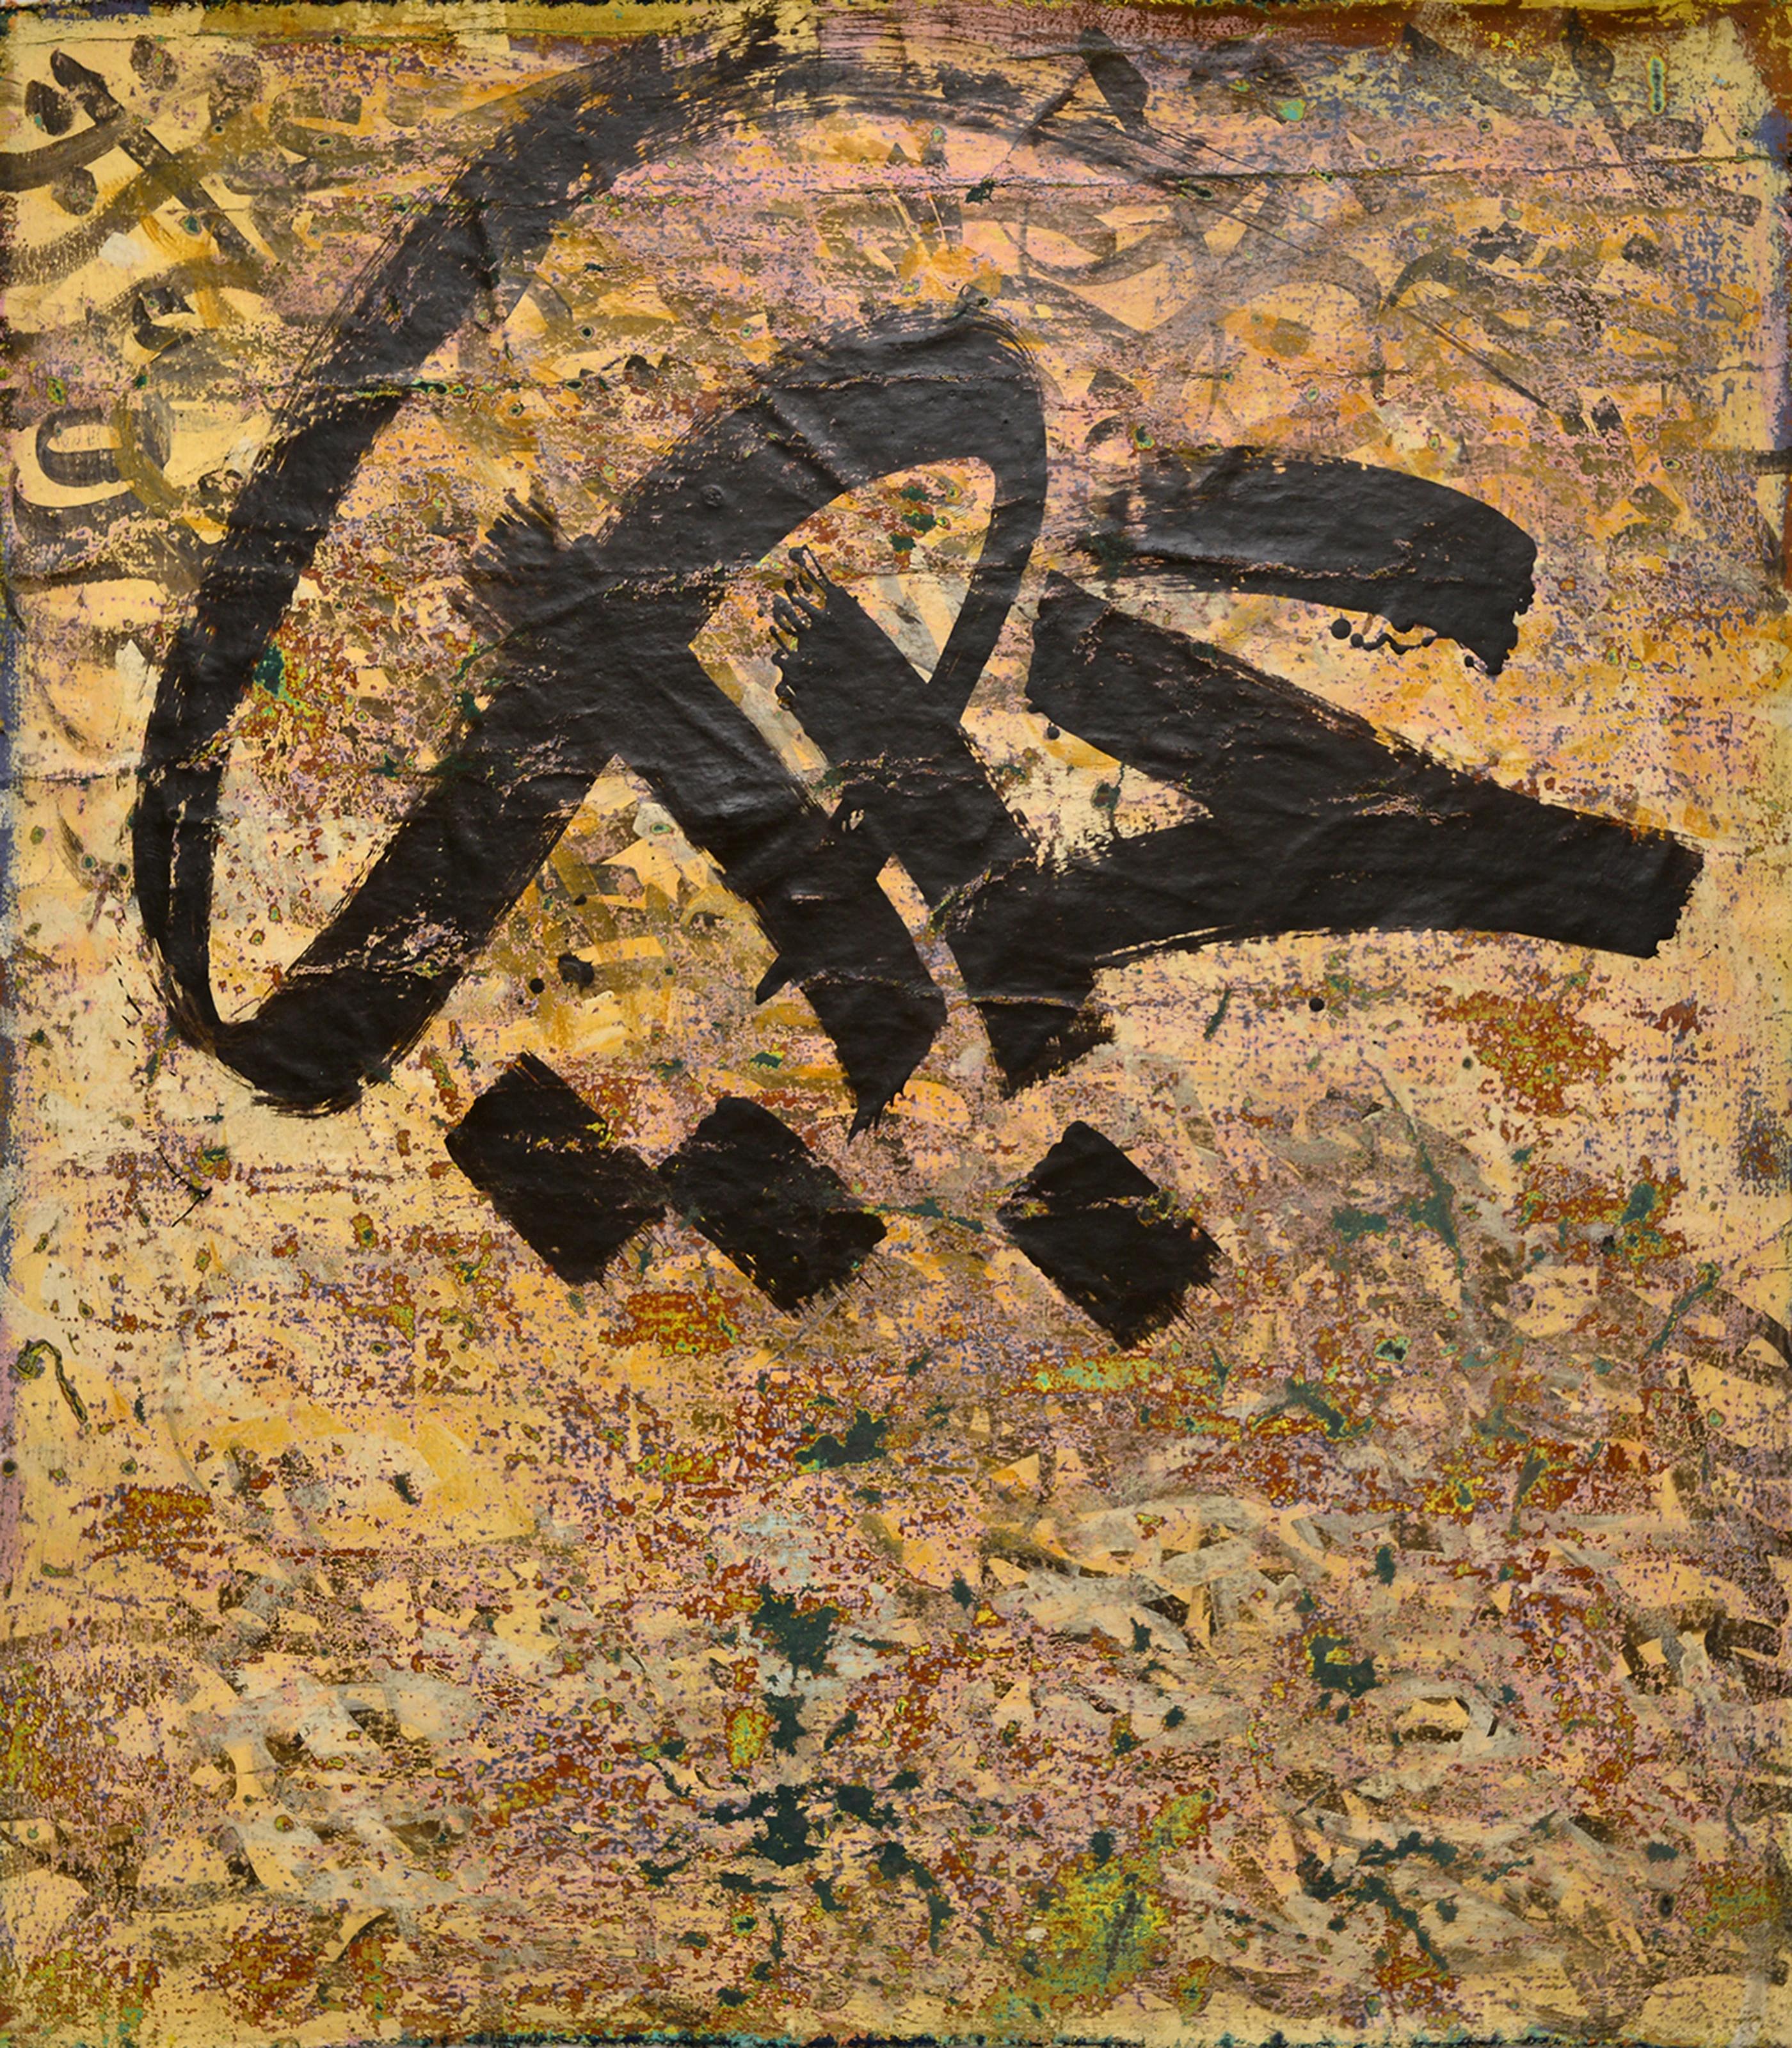 "Calligraphie abstraite" Peinture abstraite 55" x 55" pouces par Ibrahim Khatab

Ibrahim Khatab est né au Caire en 1984. Il travaille comme co-enseignant à l'université du Caire et mélange dans ses œuvres la peinture, l'art vidéo et l'installation.